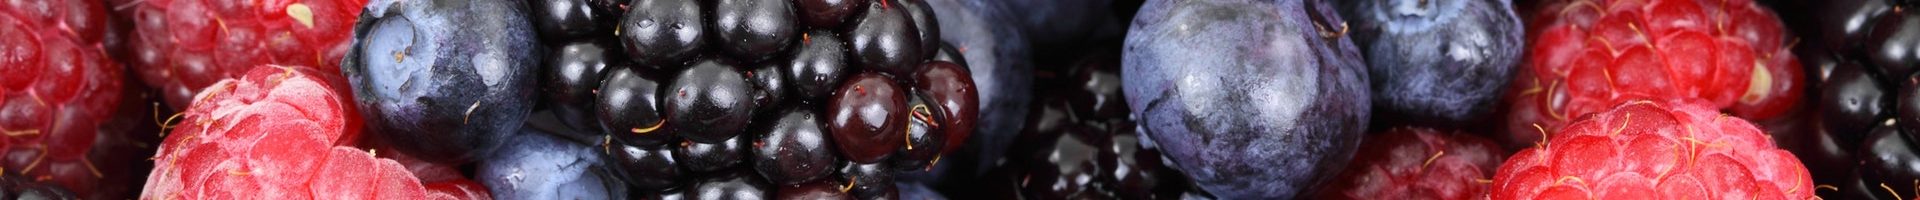 food-forest-blueberries-raspberries-87818